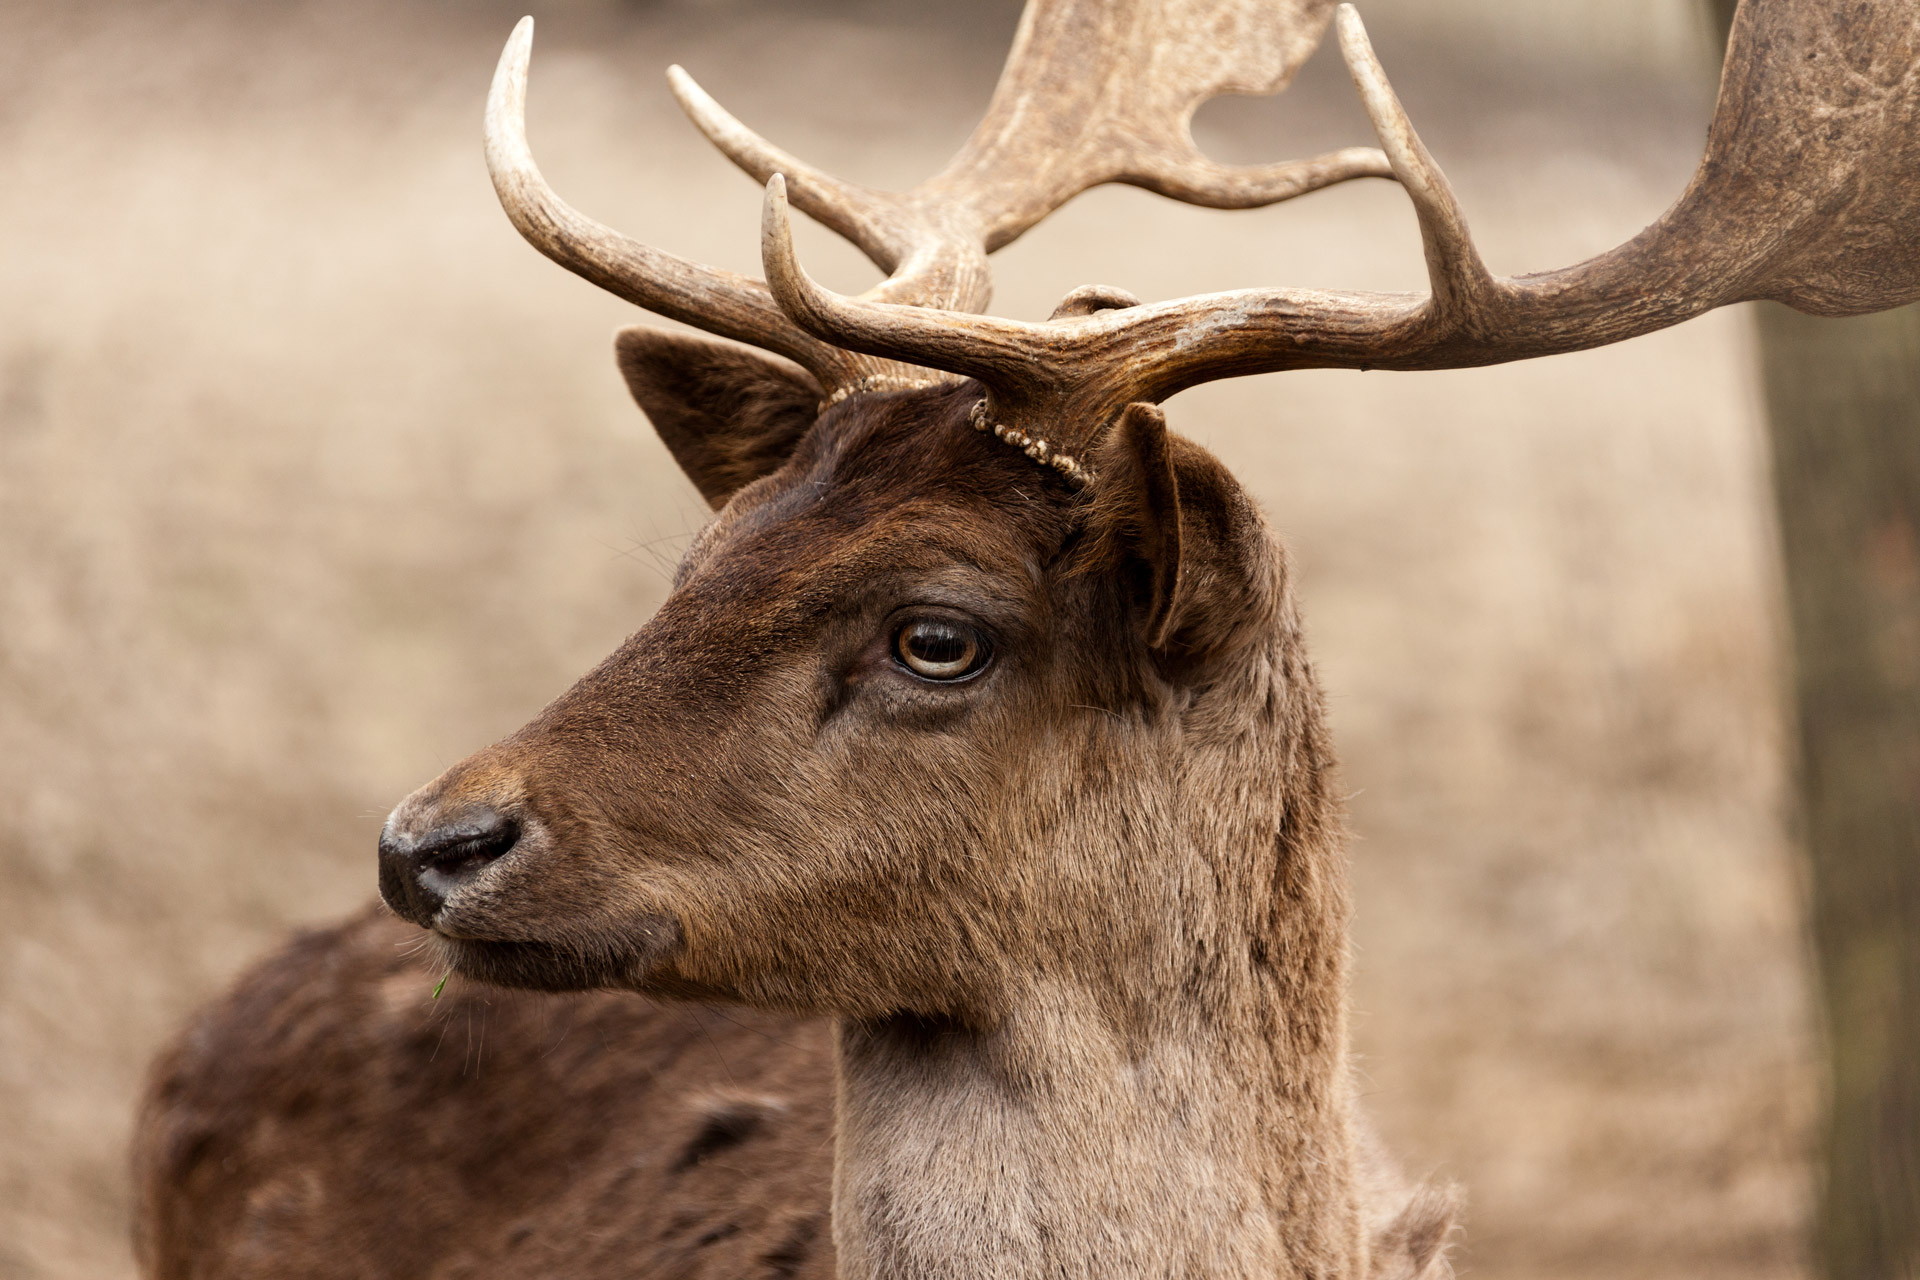 male fallow deer portrait